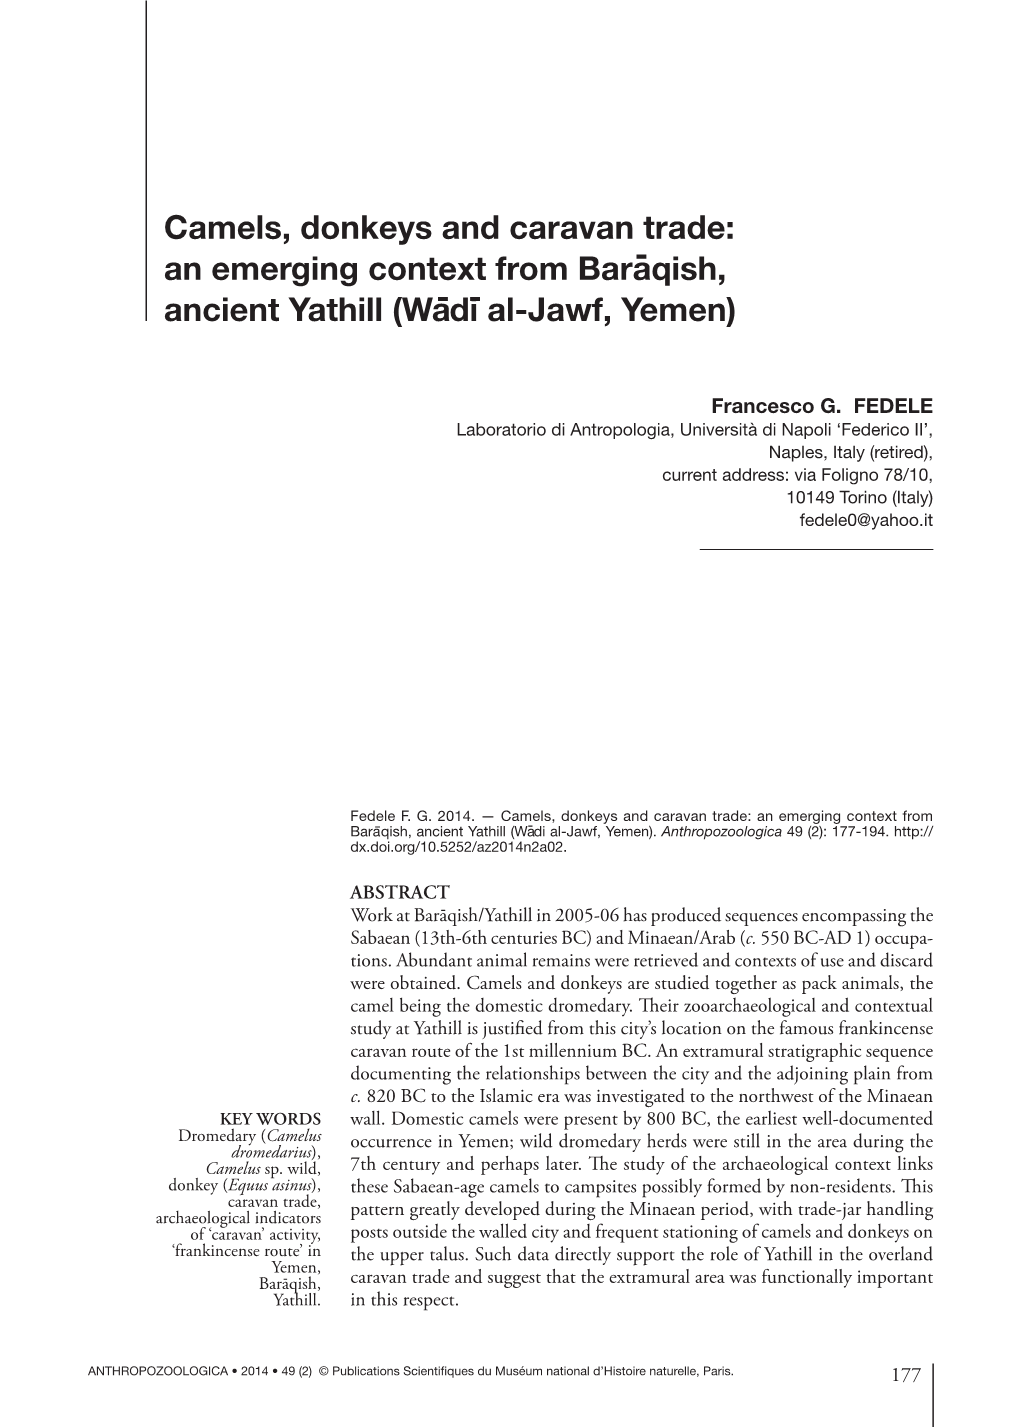 Camels, Donkeys and Caravan Trade: an Emerging Context from Baraqish